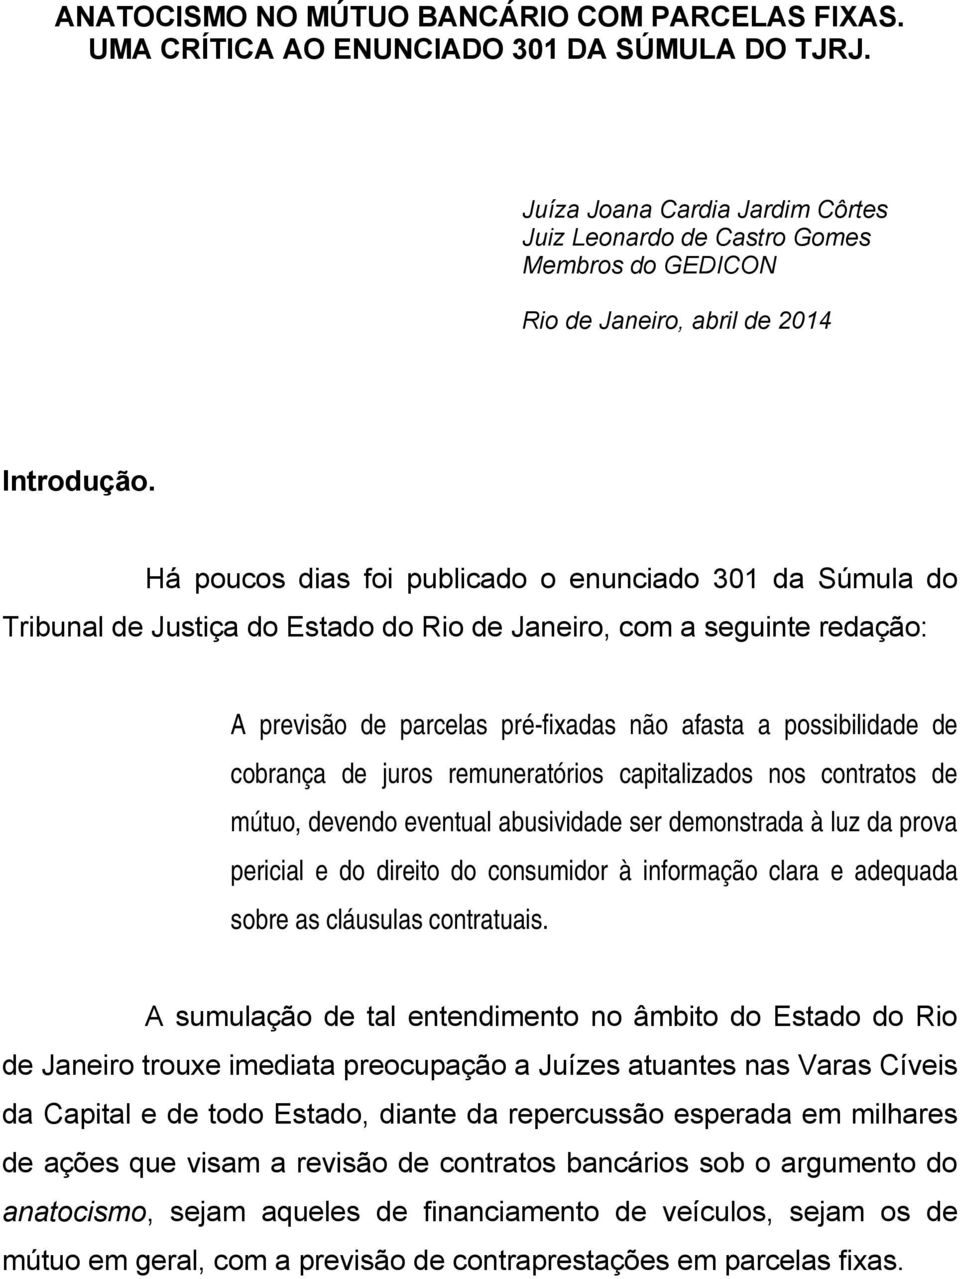 Há poucos dias foi publicado o enunciado 301 da Súmula do Tribunal de Justiça do Estado do Rio de Janeiro, com a seguinte redação: A previsão de parcelas pré-fixadas não afasta a possibilidade de